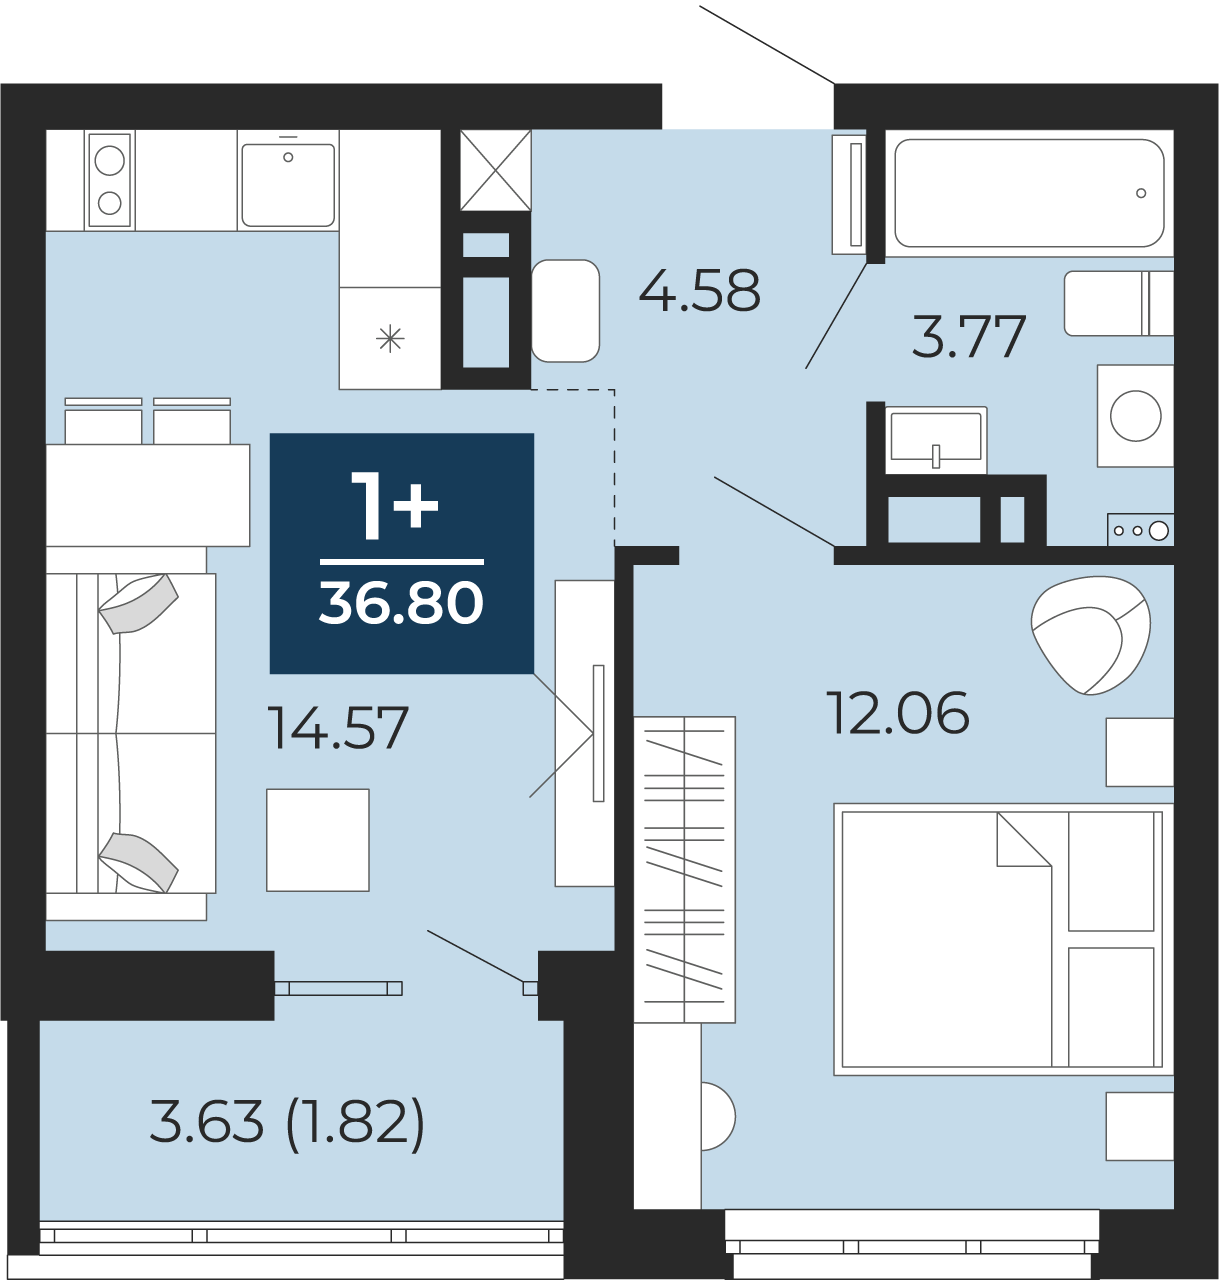 Квартира № 411, 1-комнатная, 36.8 кв. м, 12 этаж